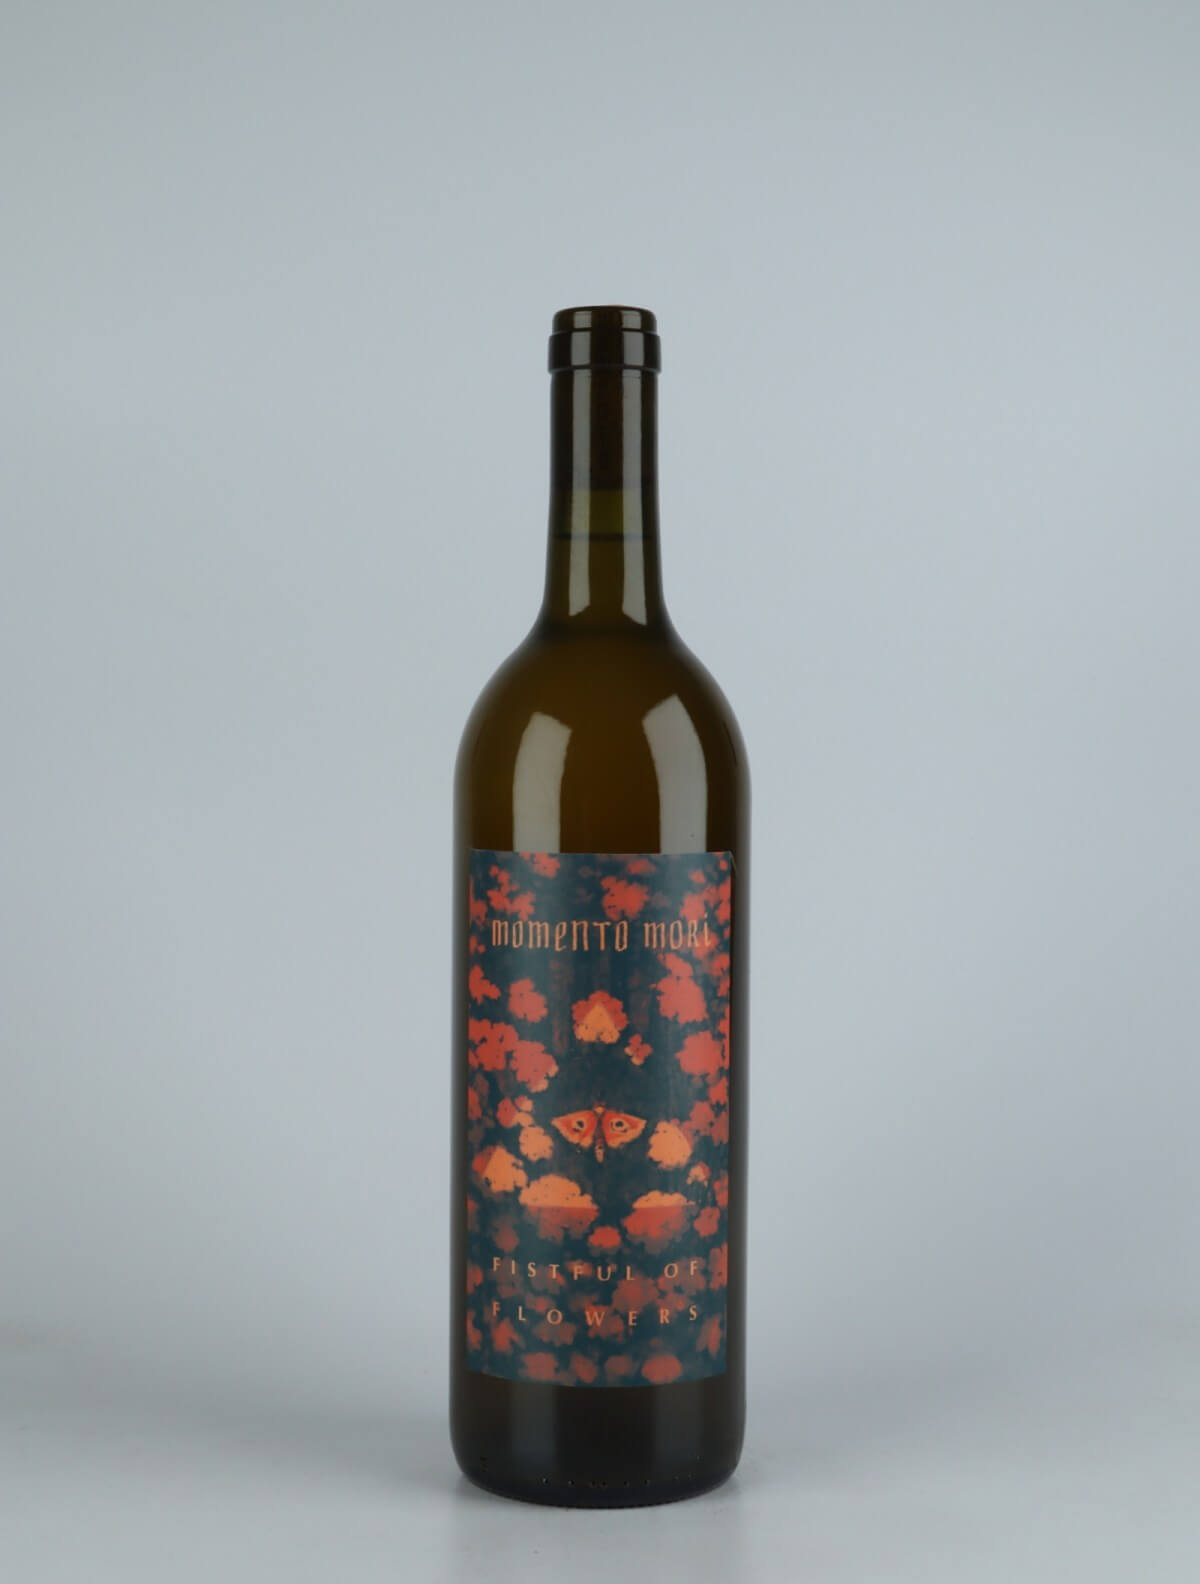 A bottle 2021 Fistful of Flowers Orange wine from Momento Mori, Victoria in Australia